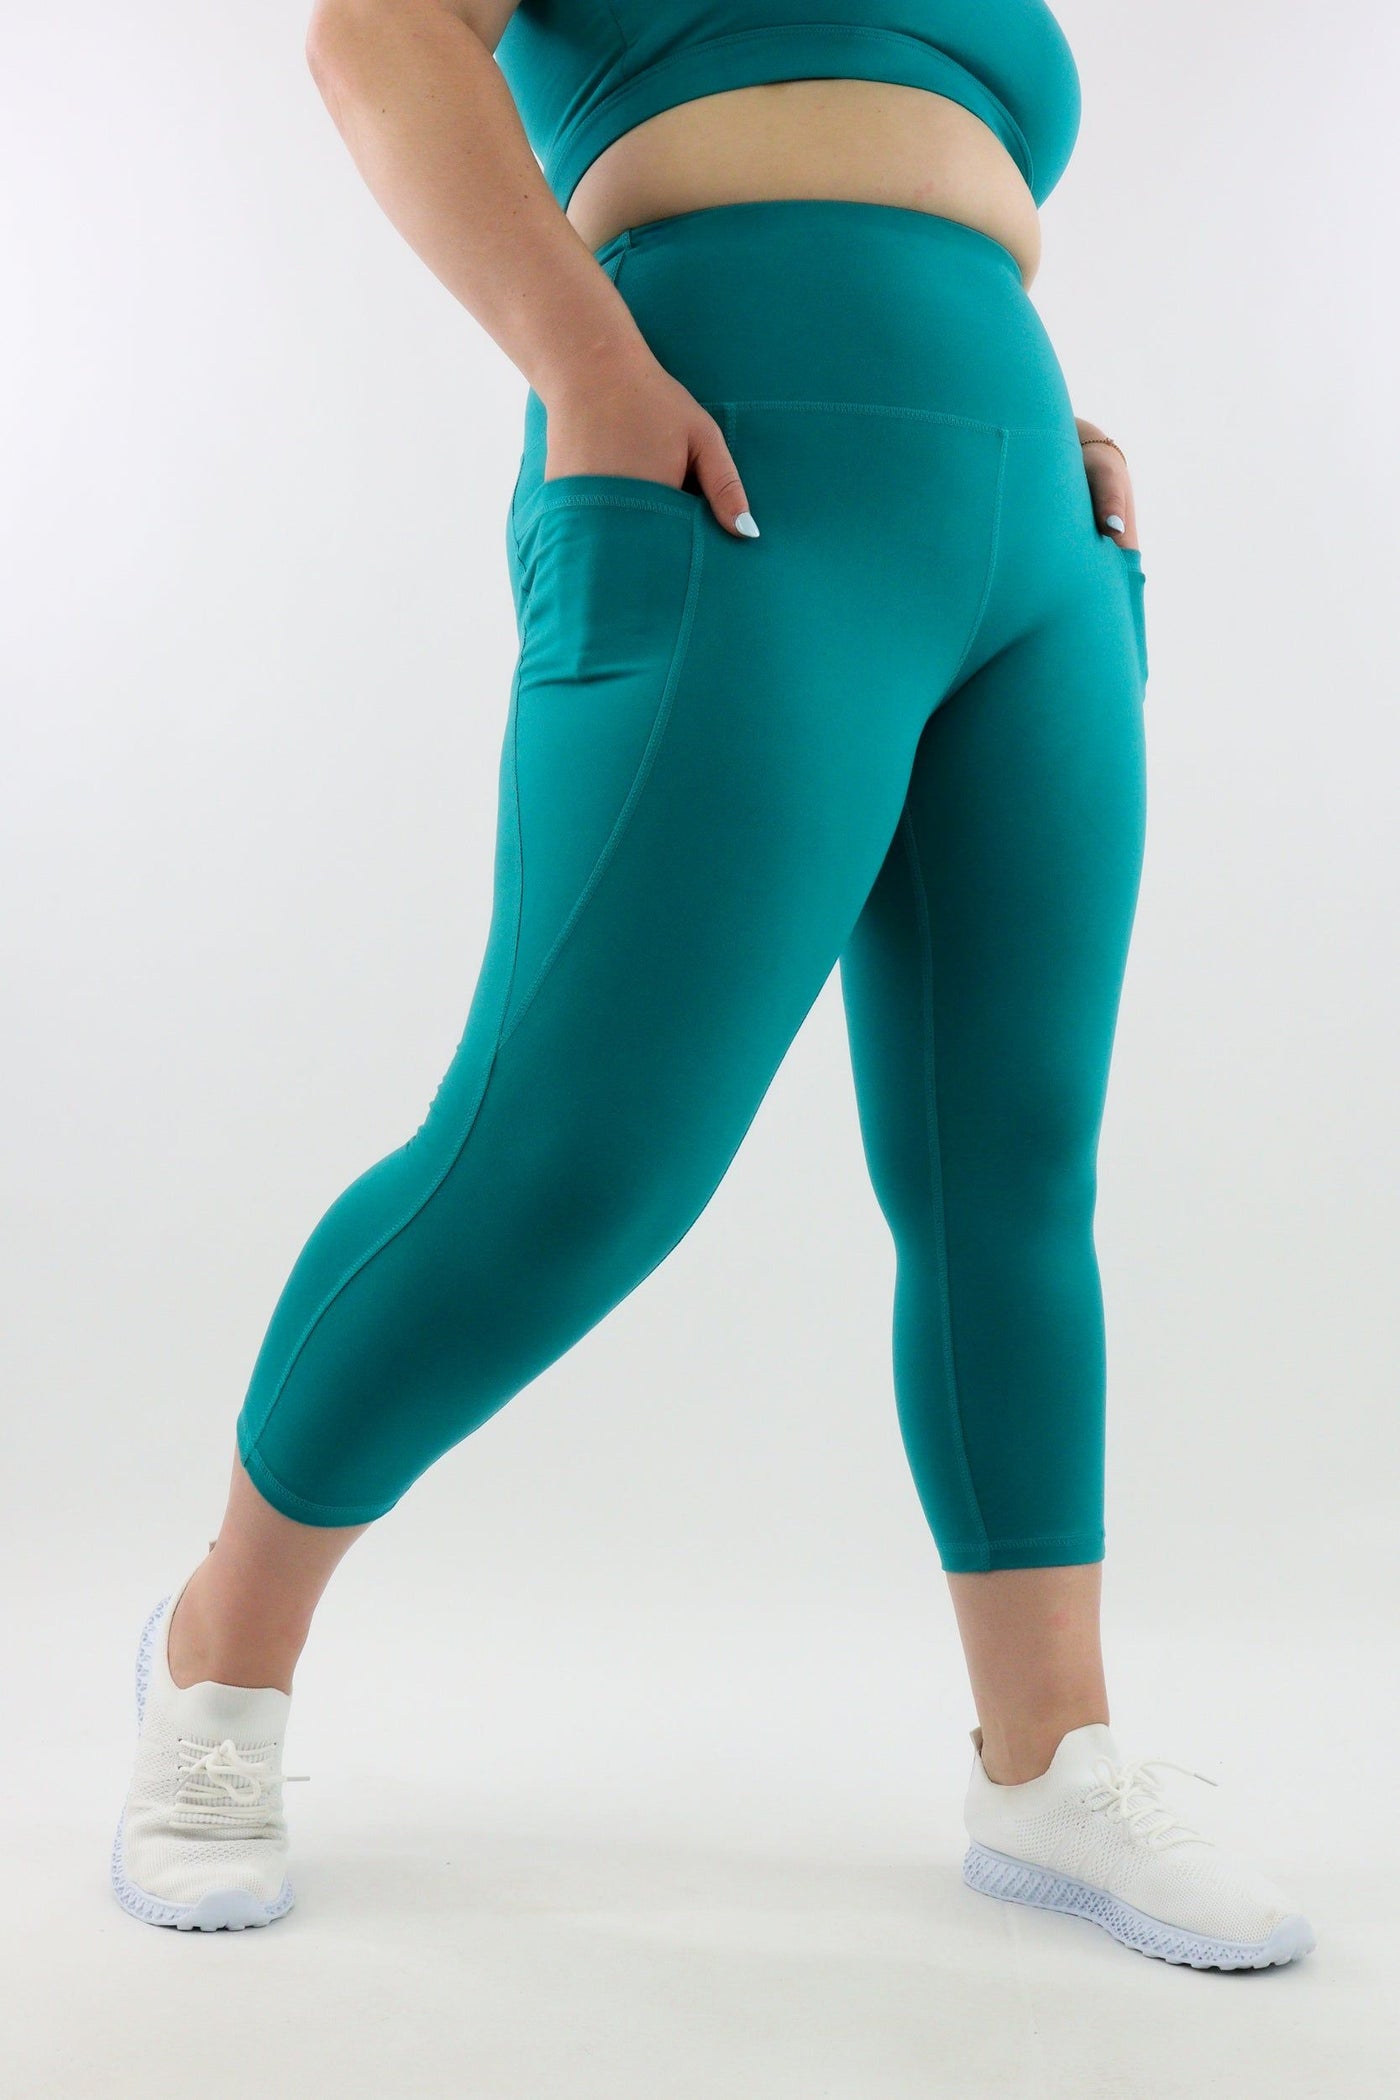 Turquoise - Leg Pockets - Capri Leggings - Hybrid 2.0 - Pawlie